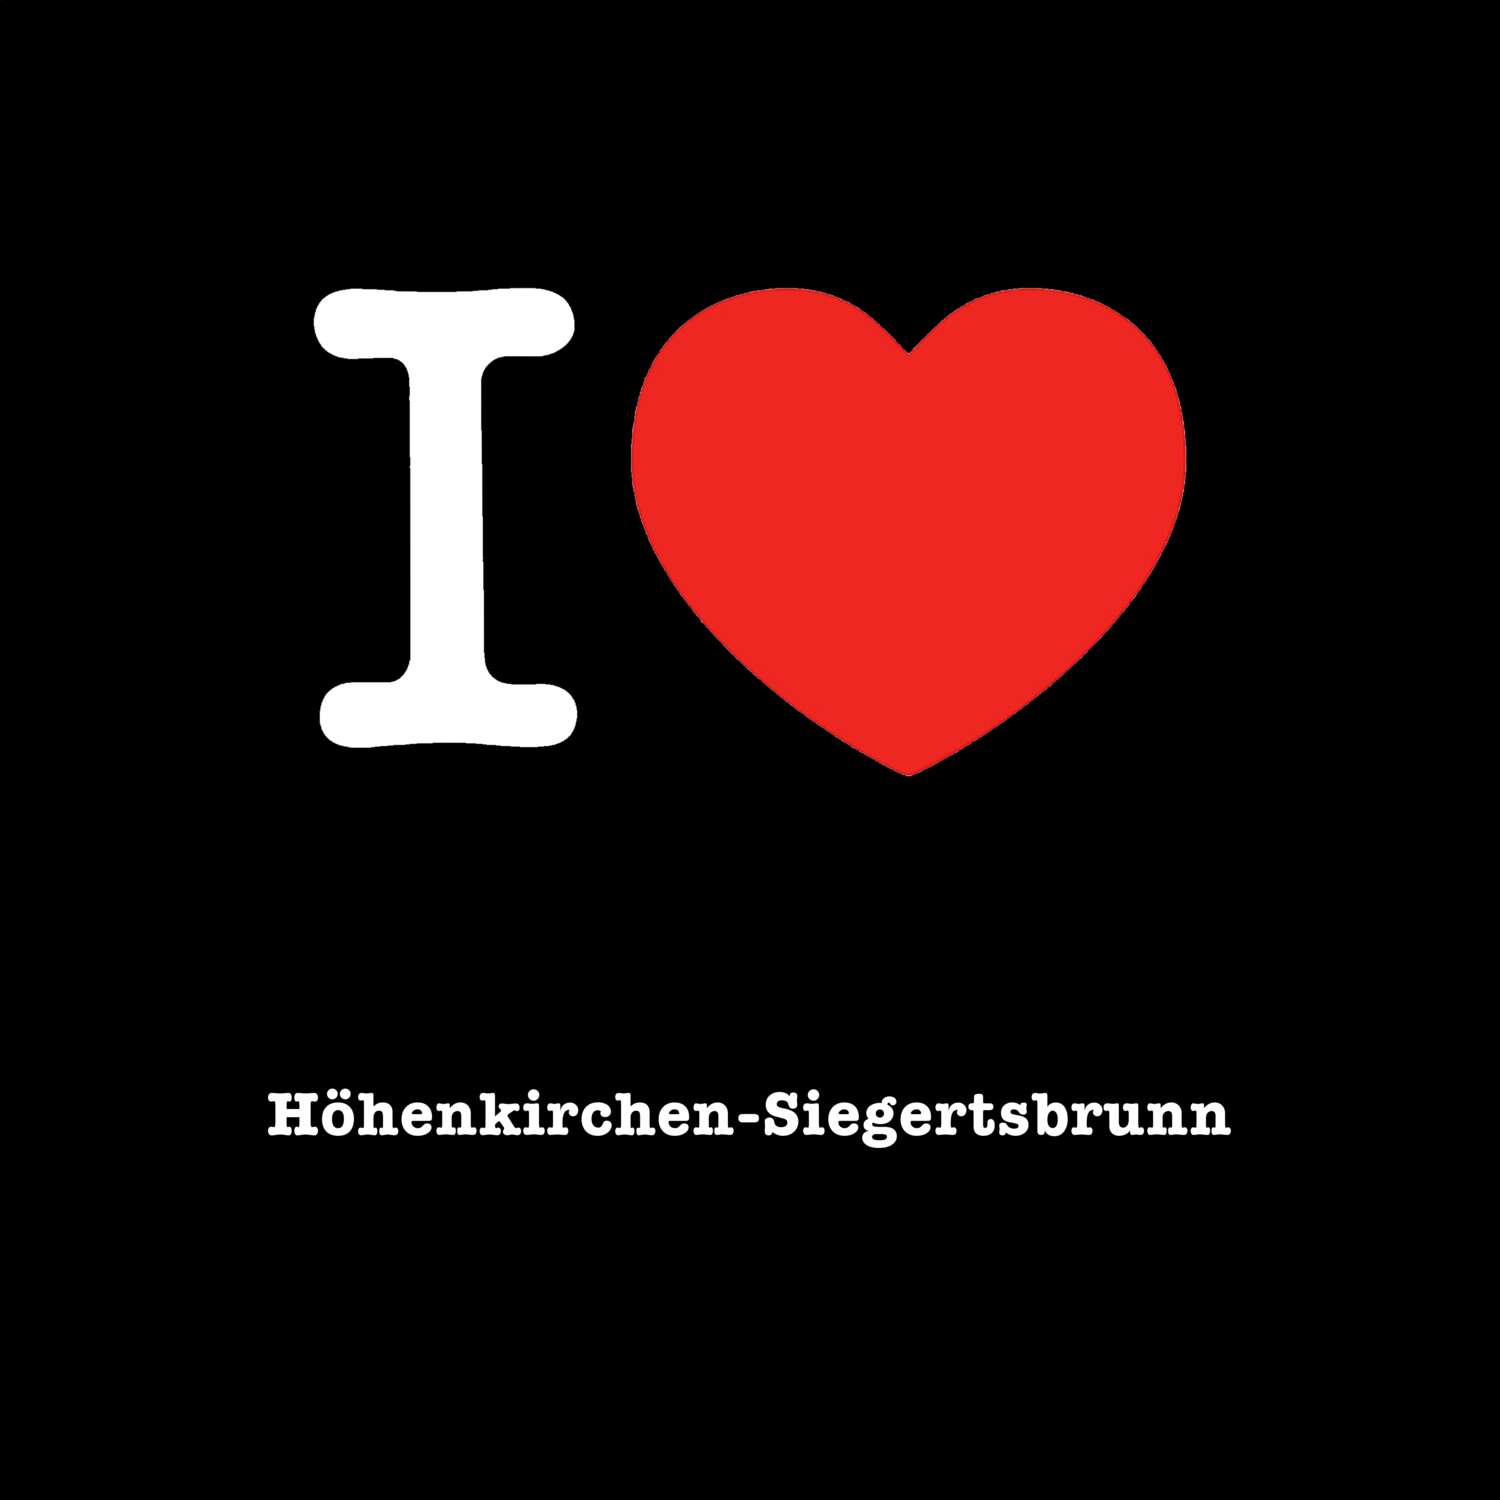 Höhenkirchen-Siegertsbrunn T-Shirt »I love«